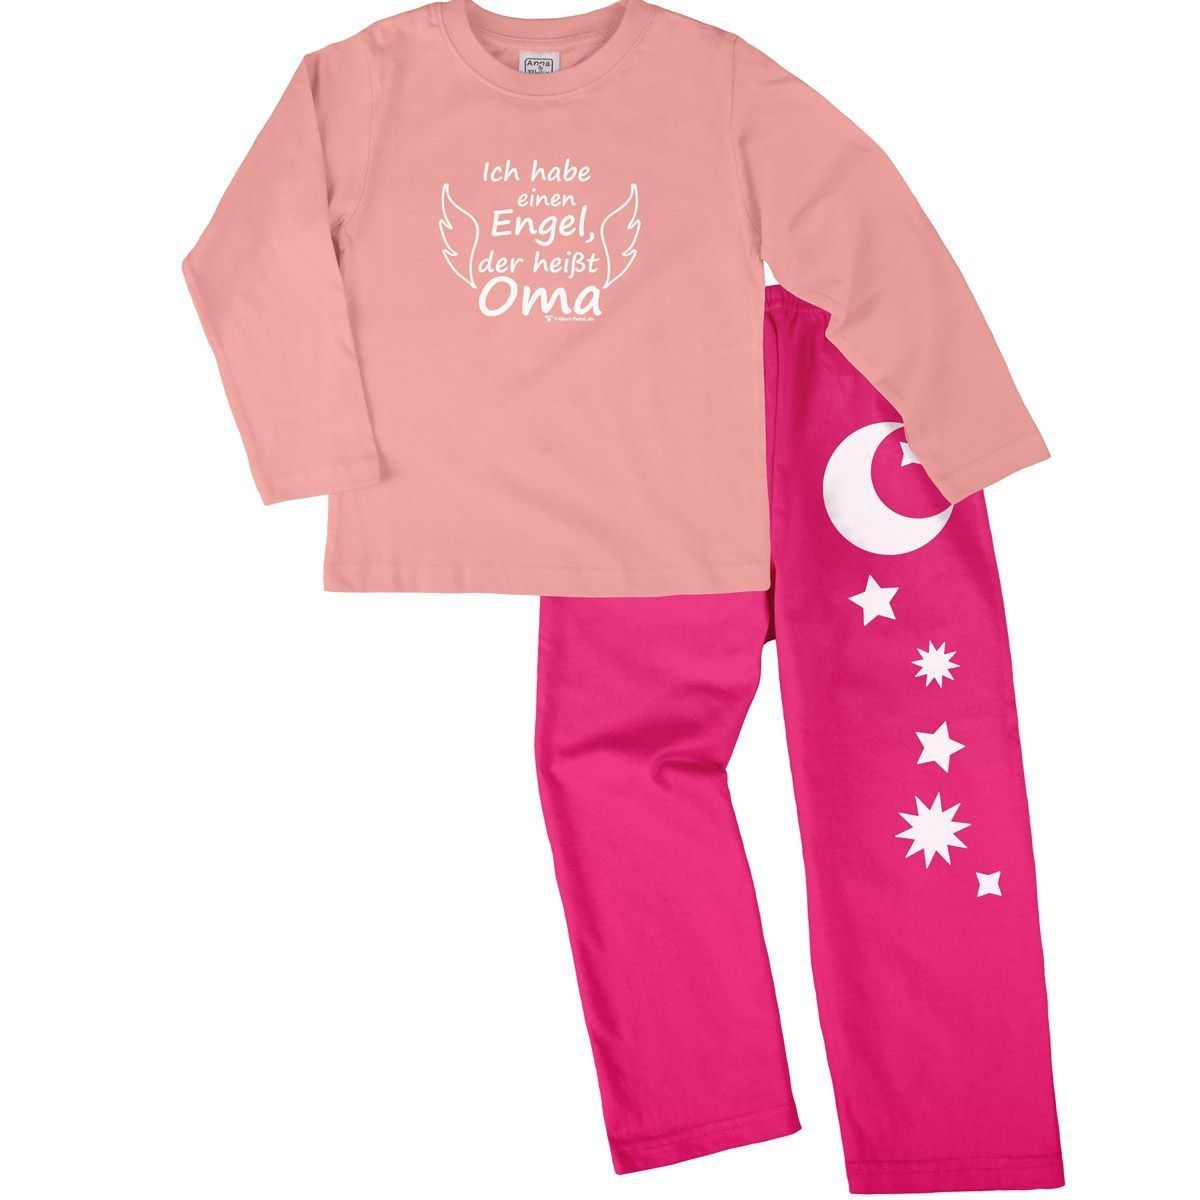 Engel Oma Pyjama Set rosa / pink 122 / 128